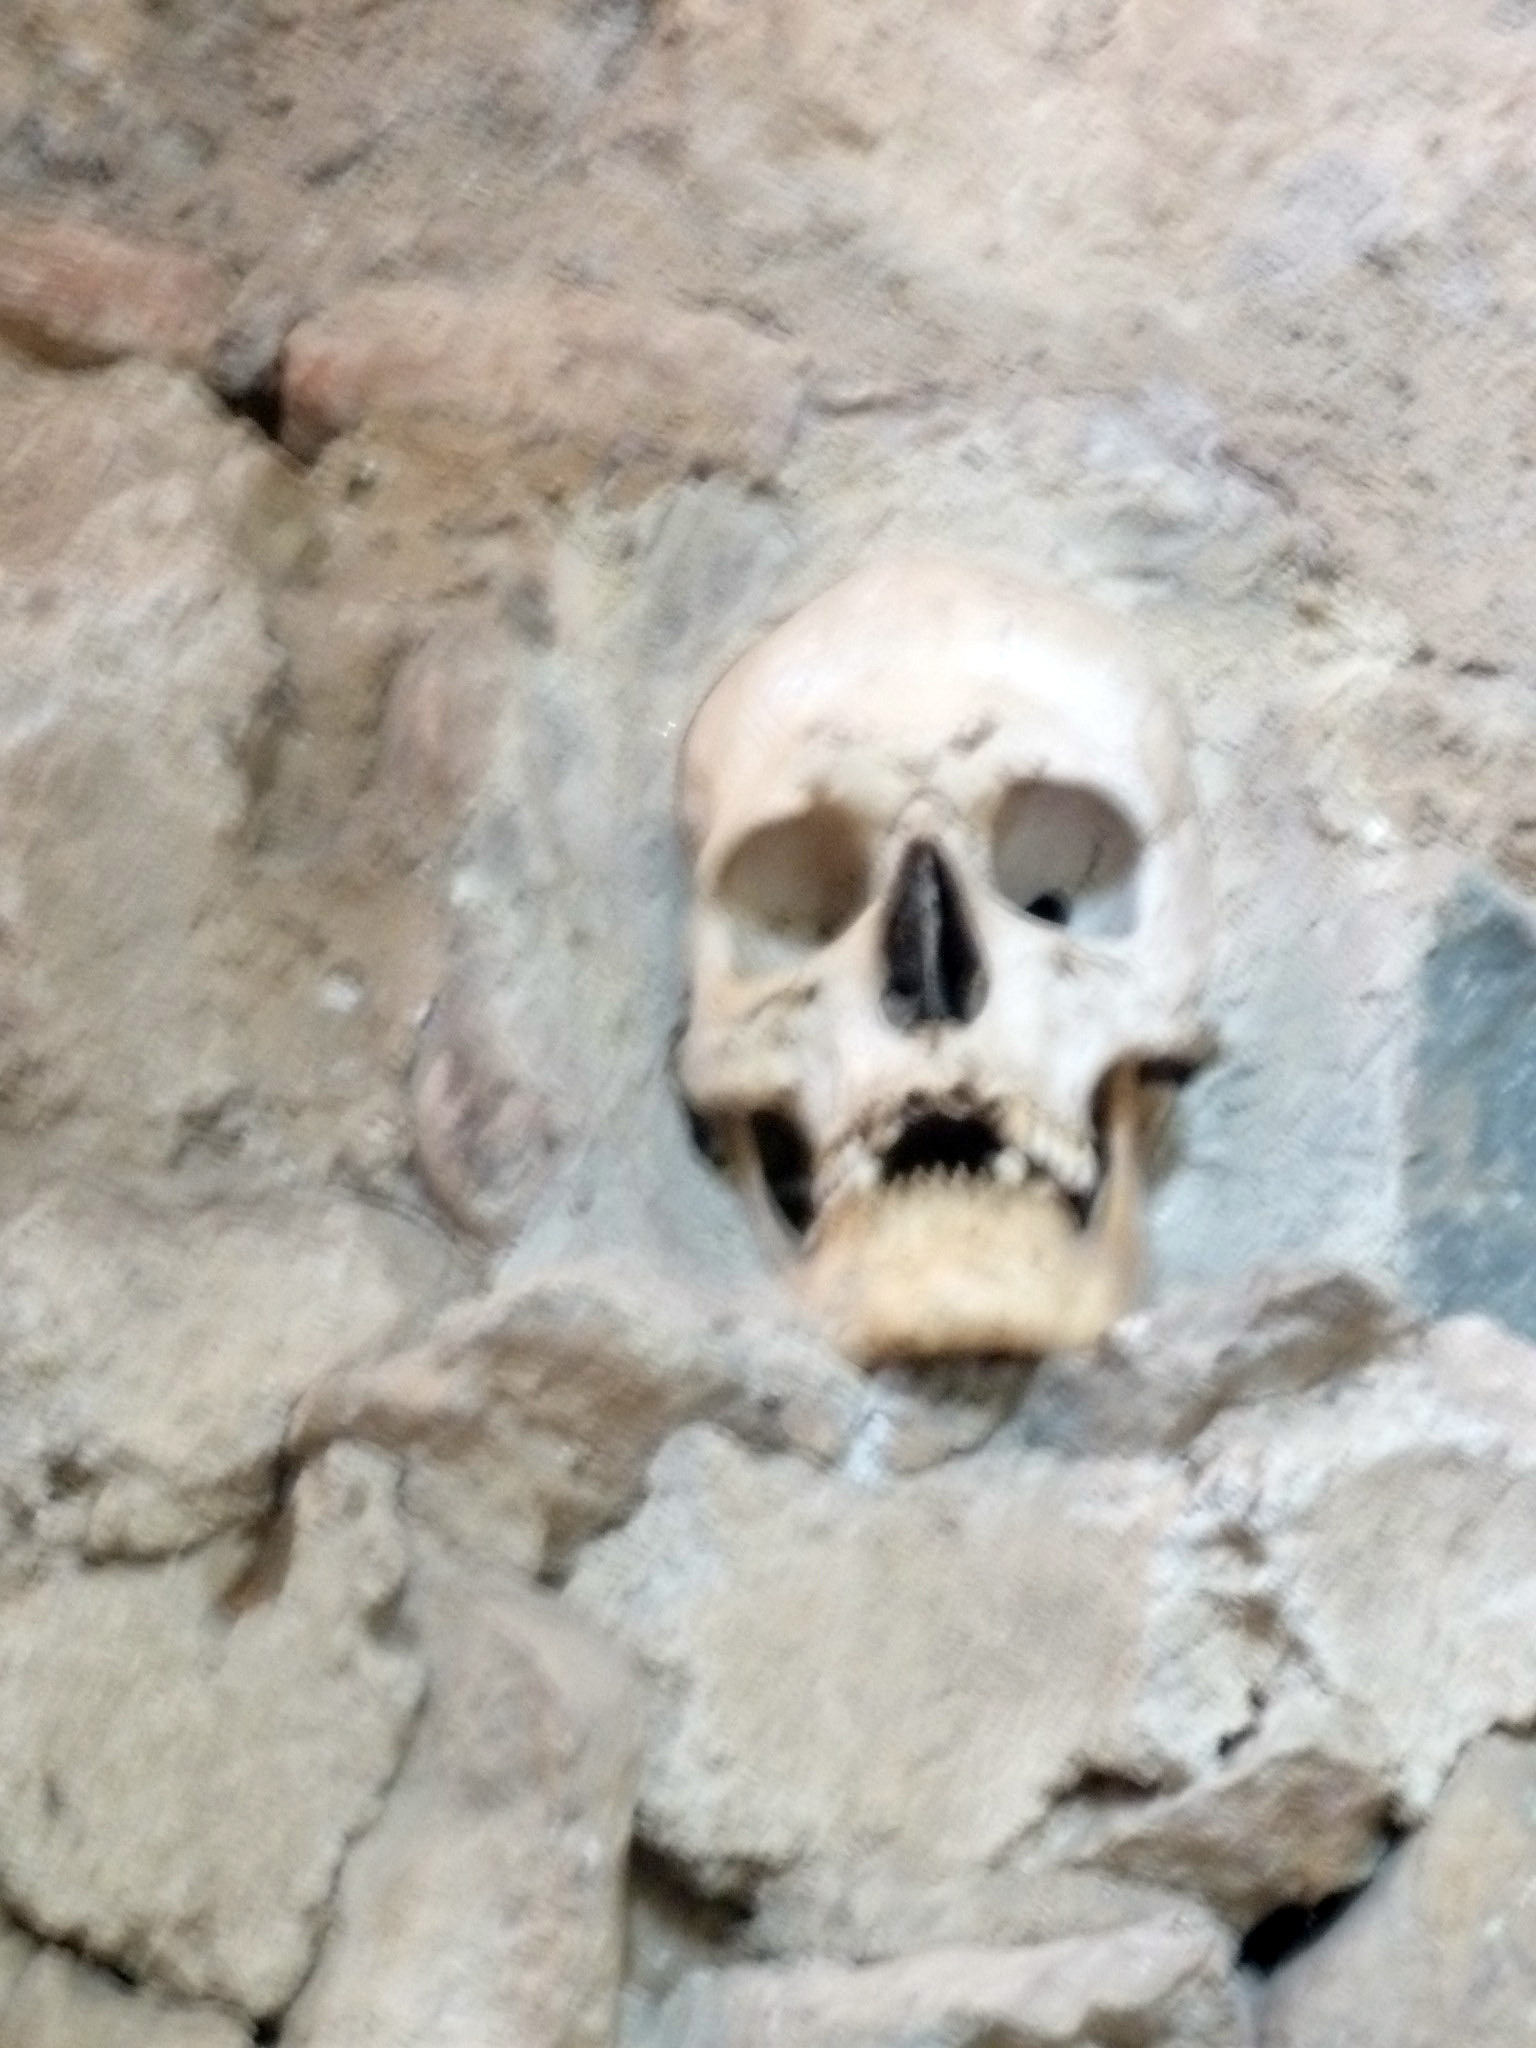 Skull in wall